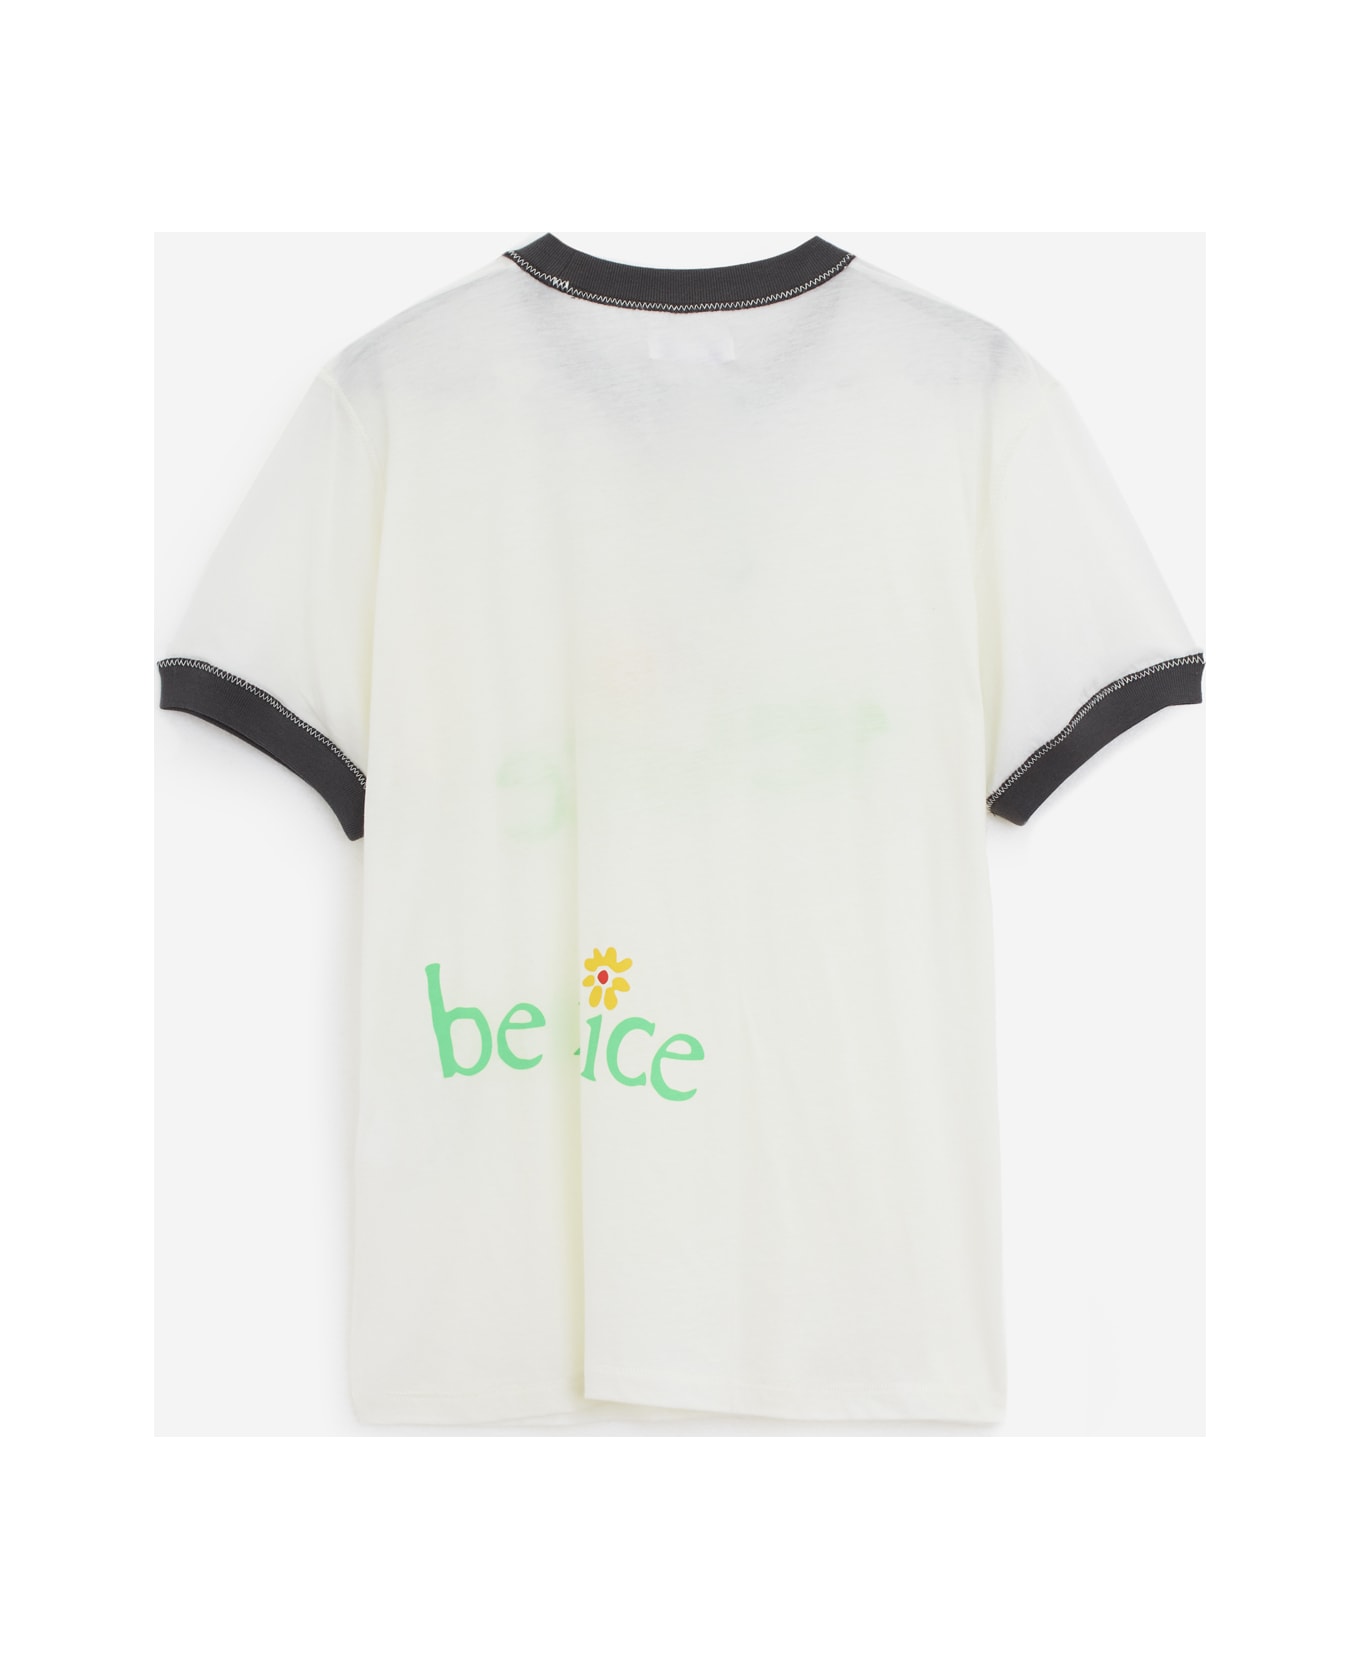 ERL Venice Tshirt T-shirt - white シャツ